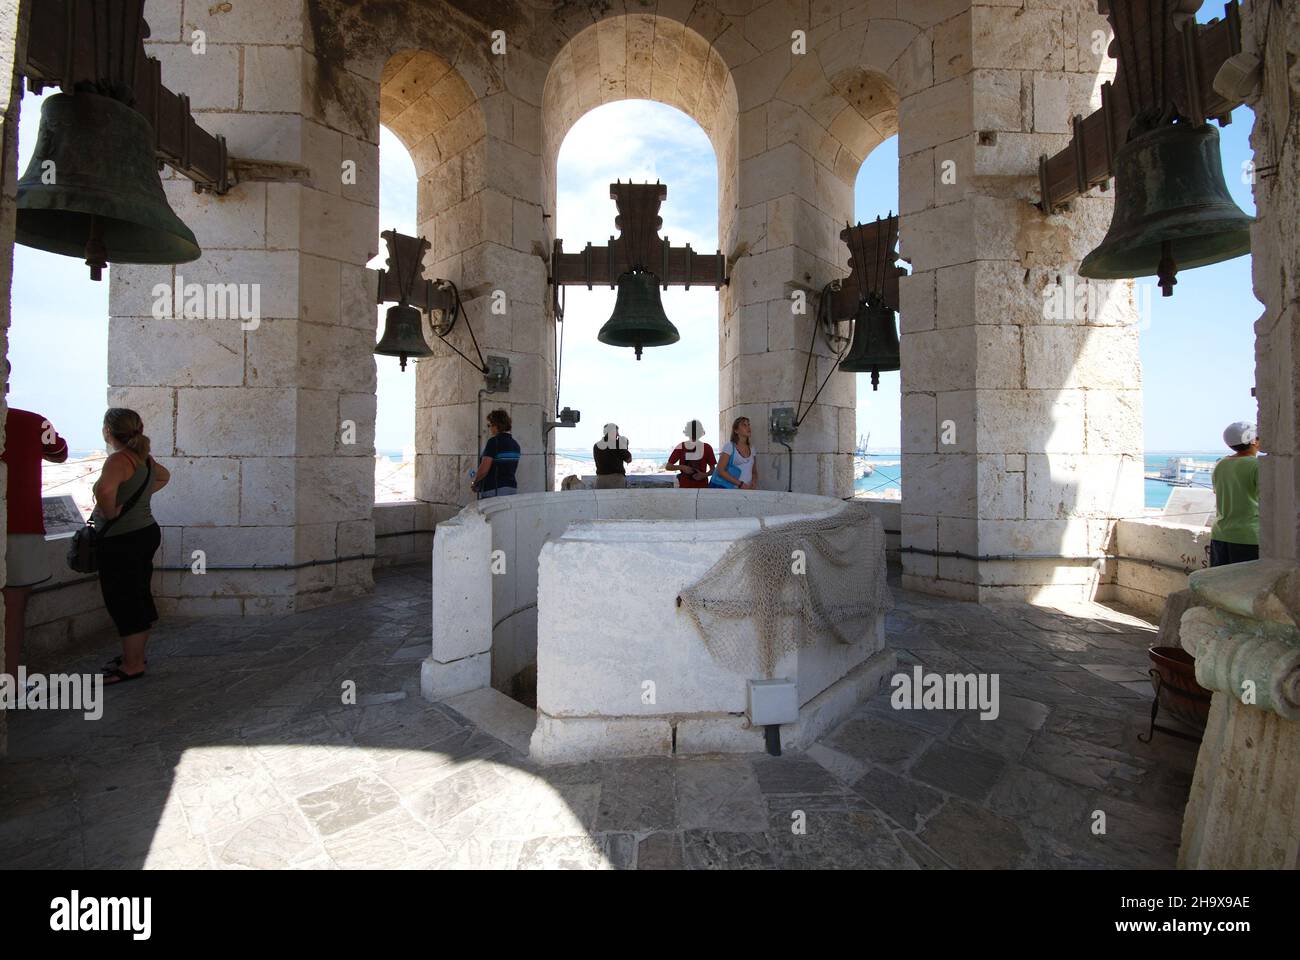 Cinco campanas en el campanario occidental de la Catedral (Torre de Poniente) con turistas disfrutando de la vista, Cádiz, provincia de Cádiz, Andalucía, España, Oeste E Foto de stock